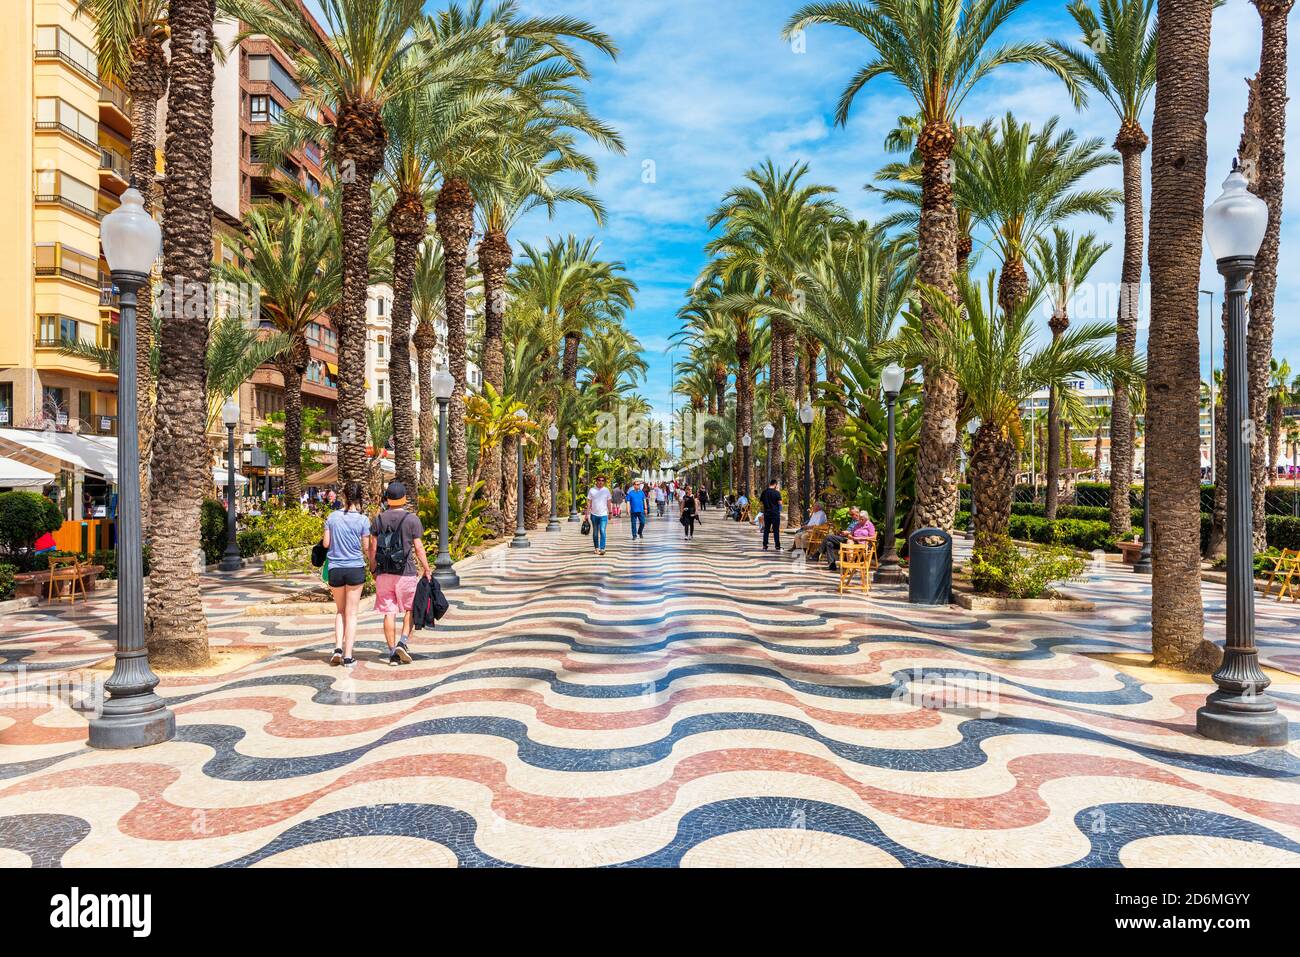 Persone che camminano su una passeggiata costeggiata da palme ad Alicante, Spagna. Alicante è una città situata a sud-est della penisola iberica. Foto Stock